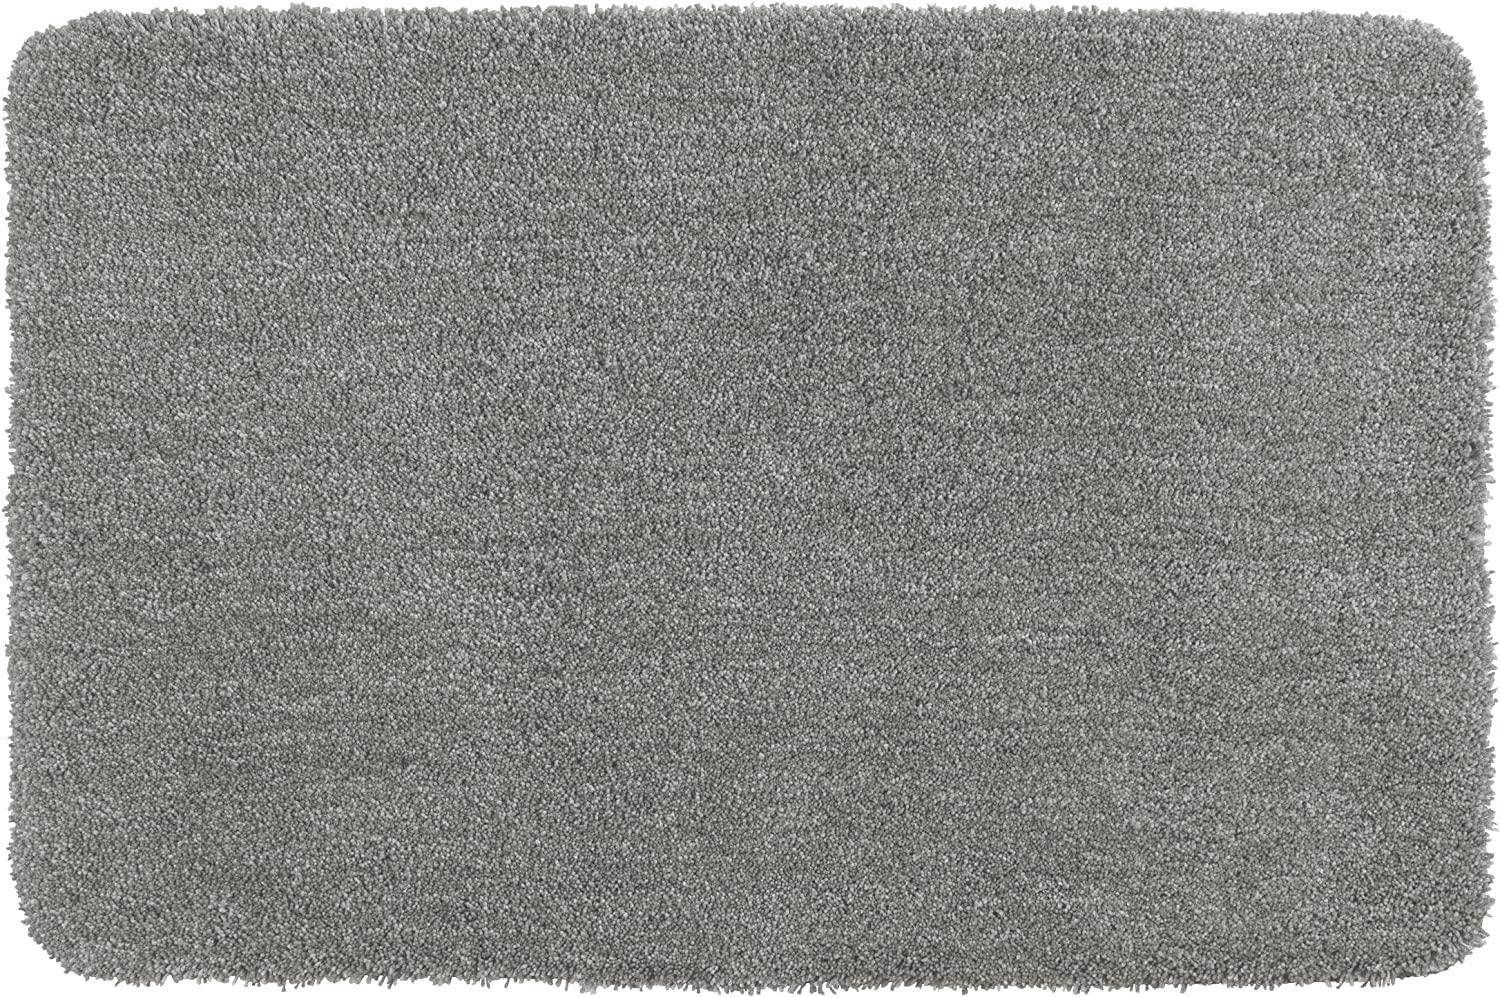 MELANGE Badteppich, sandfarben, 70 x 120 cm Bild 1